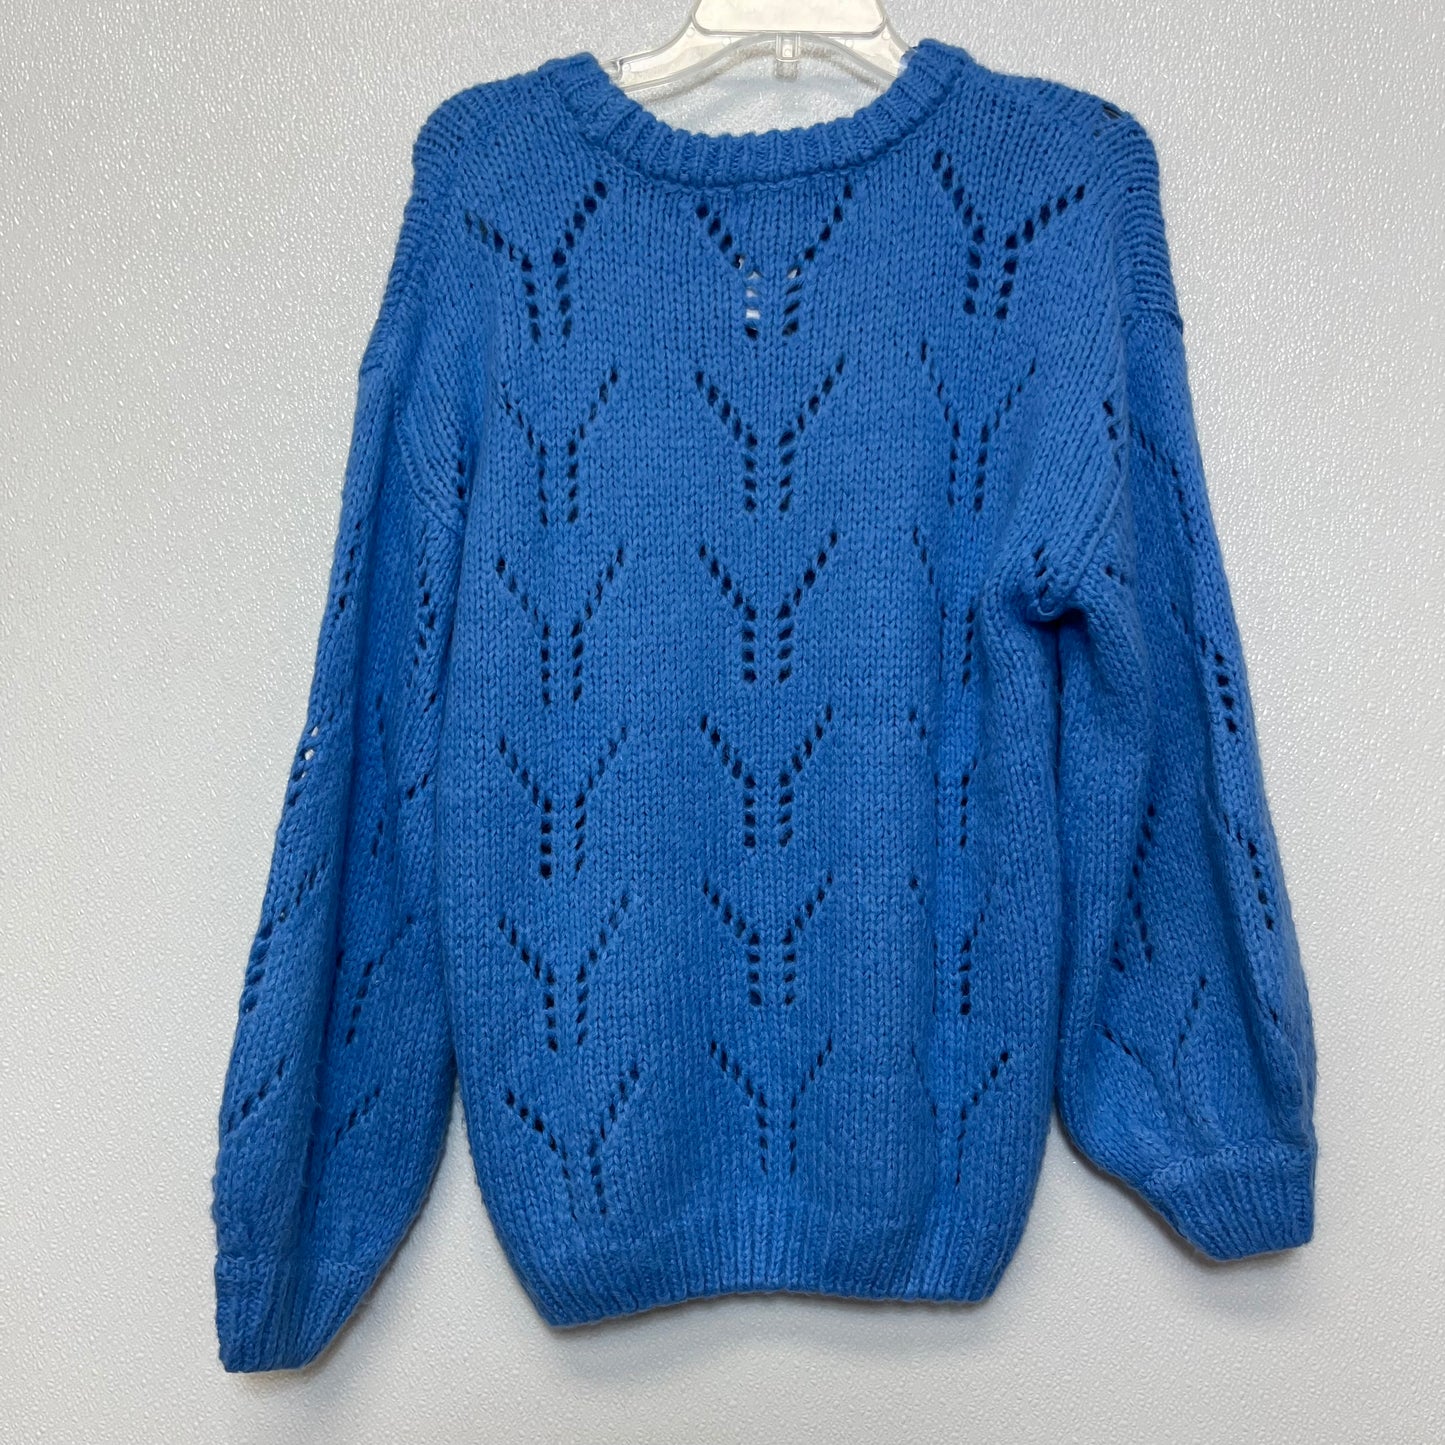 Sweater By Joa  Size: Xs